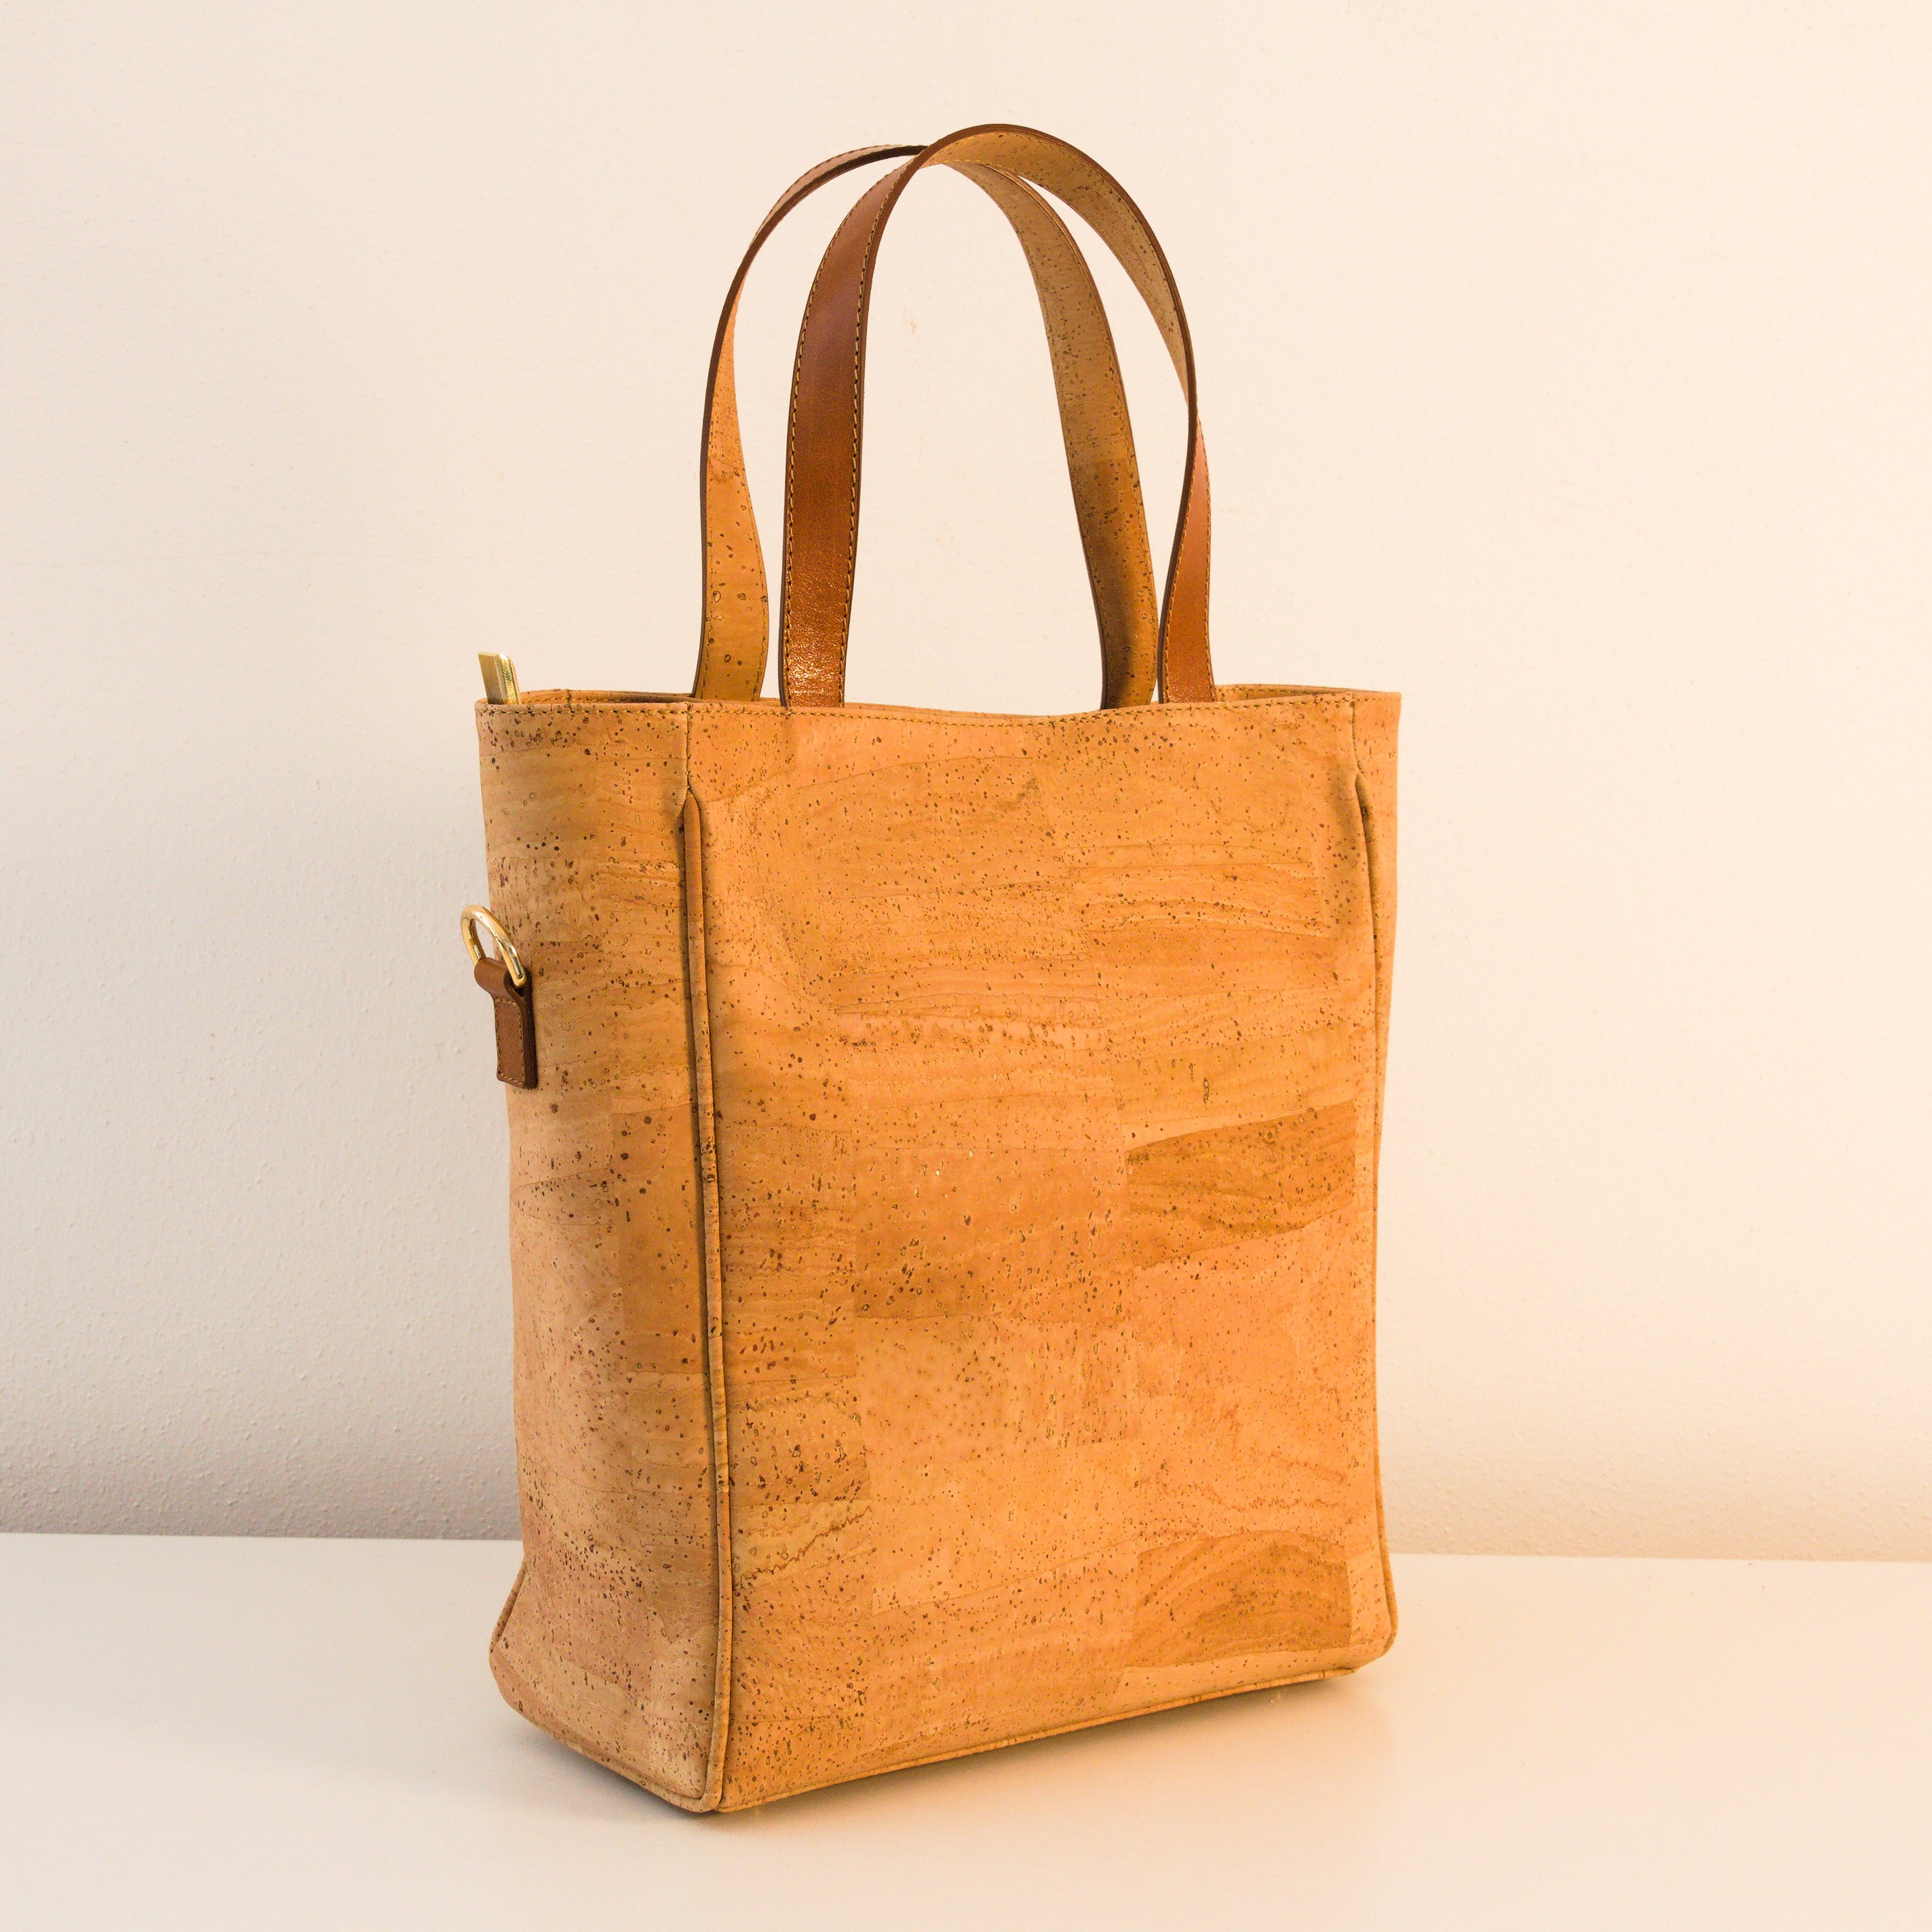 Cork handbag * shoulder bag for women * crossbody * shopper * handmade in Portugal